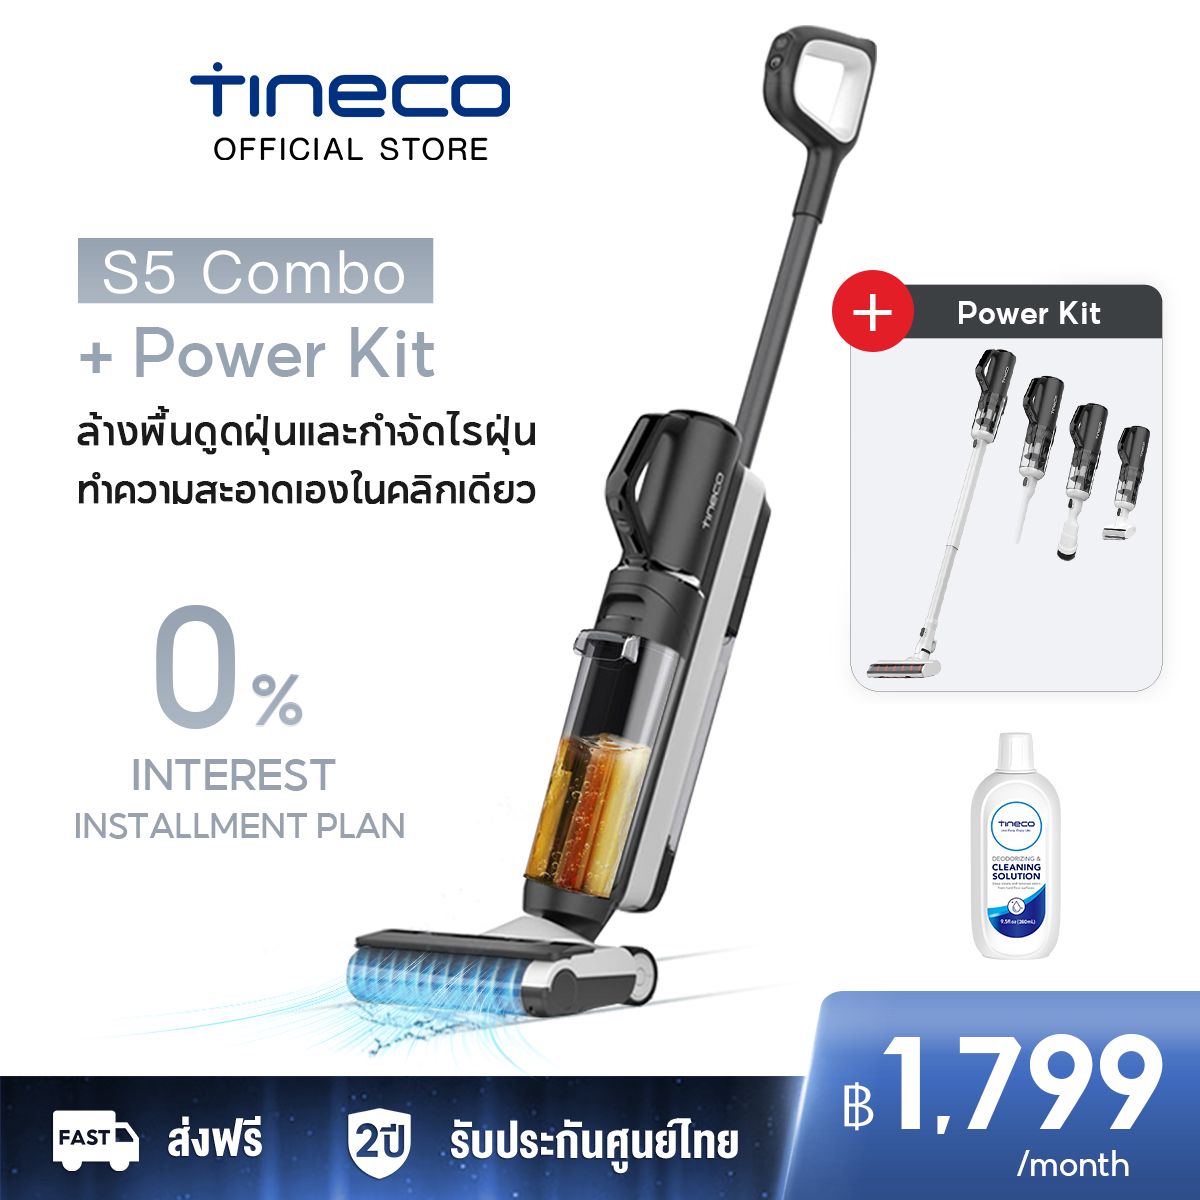 ใหม่ล่าสุด] Tineco Floor One S5 Combo เครื่องล้างพื้น เครื่องดูดฝุ่น  ดูดฝุ่น ถูพื้น ล้างพื้น ครบจบในเครื่องเดียว iLo